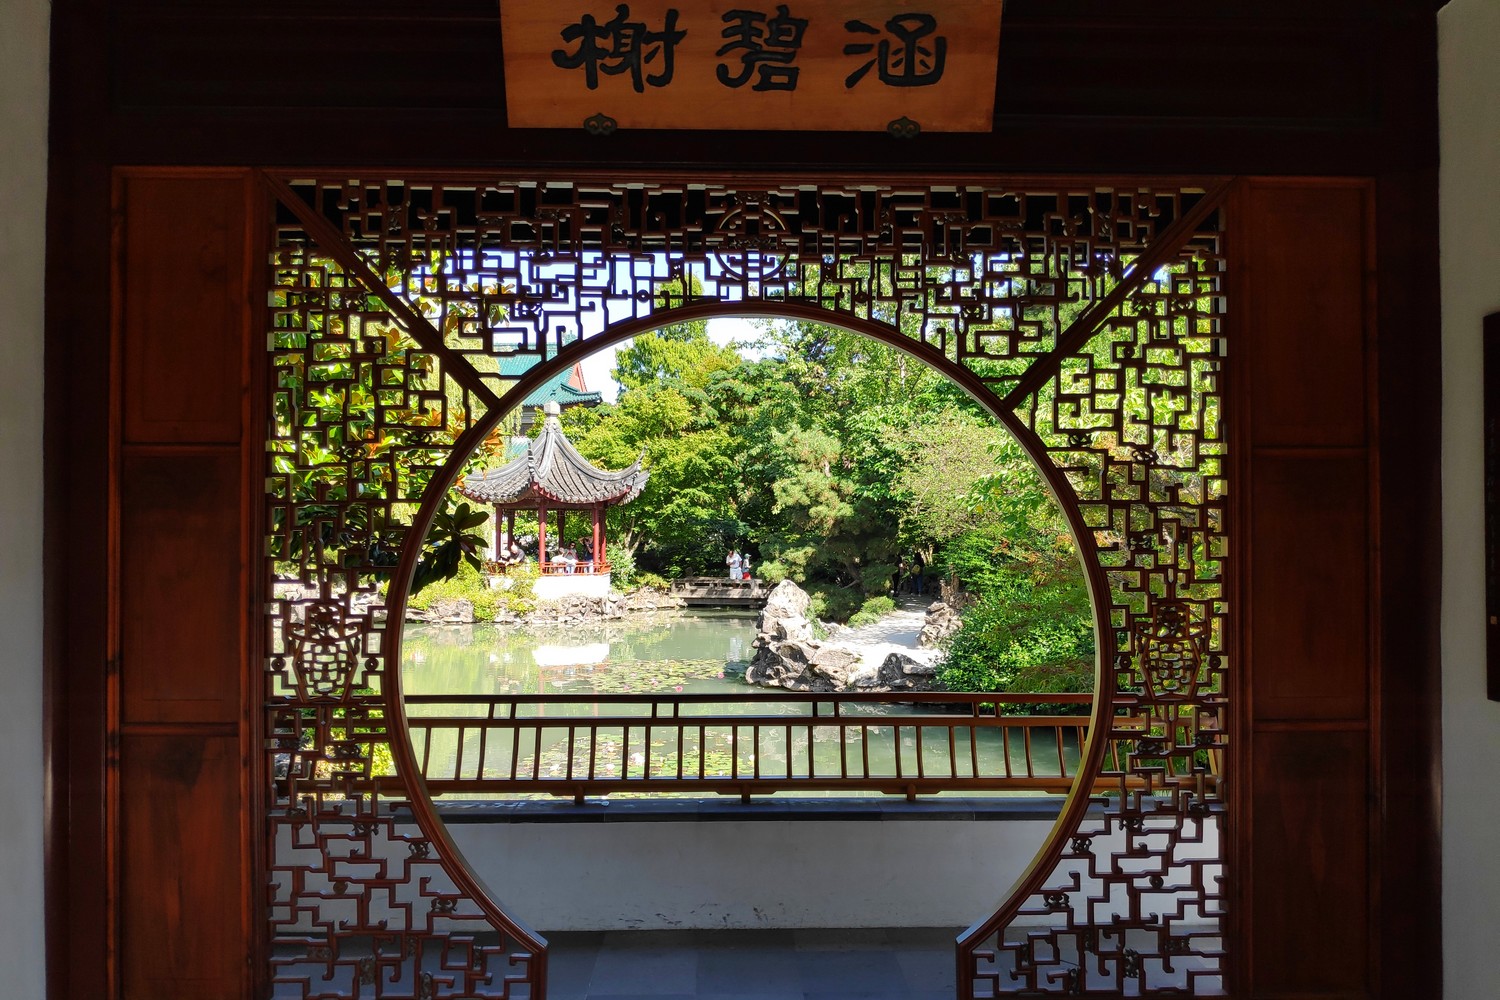 Porte circulaire donnant sur le bassin au Jardin Chinois de Vancouver